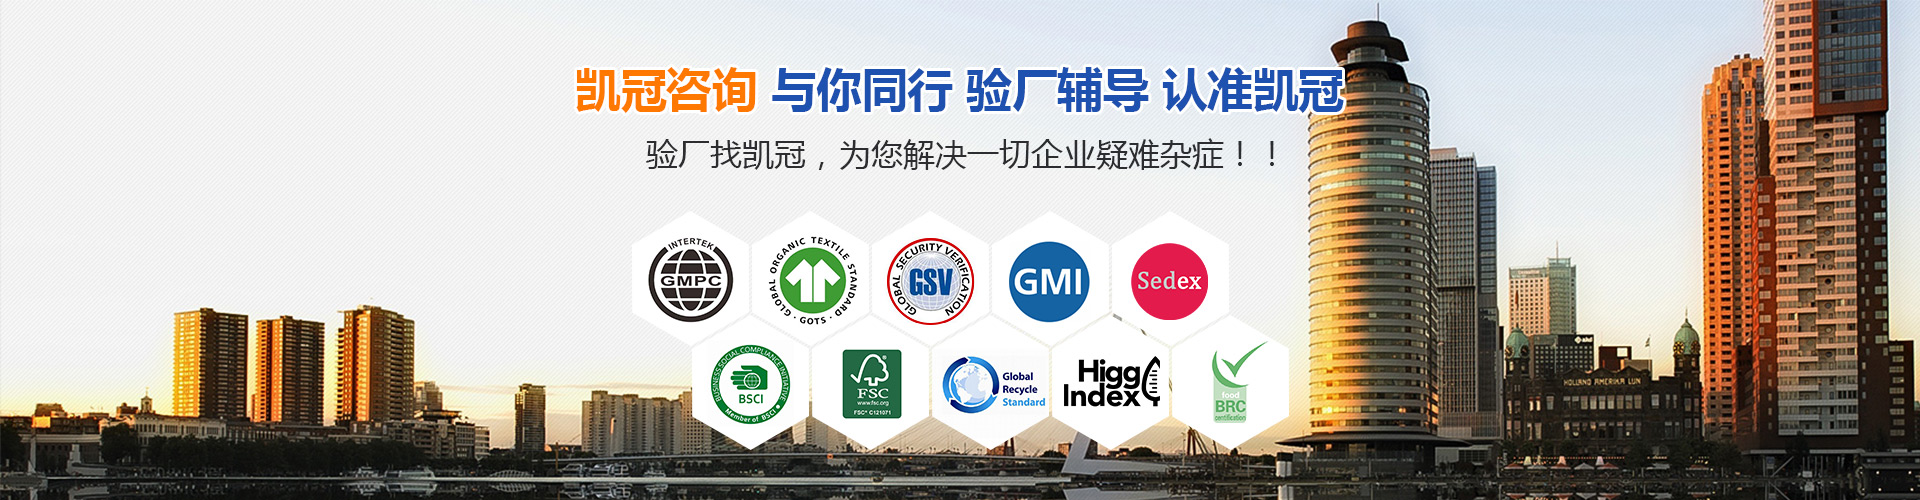 汕尾FSC咨询公司 广州惠州FSC咨询流程和细节 欢迎来电